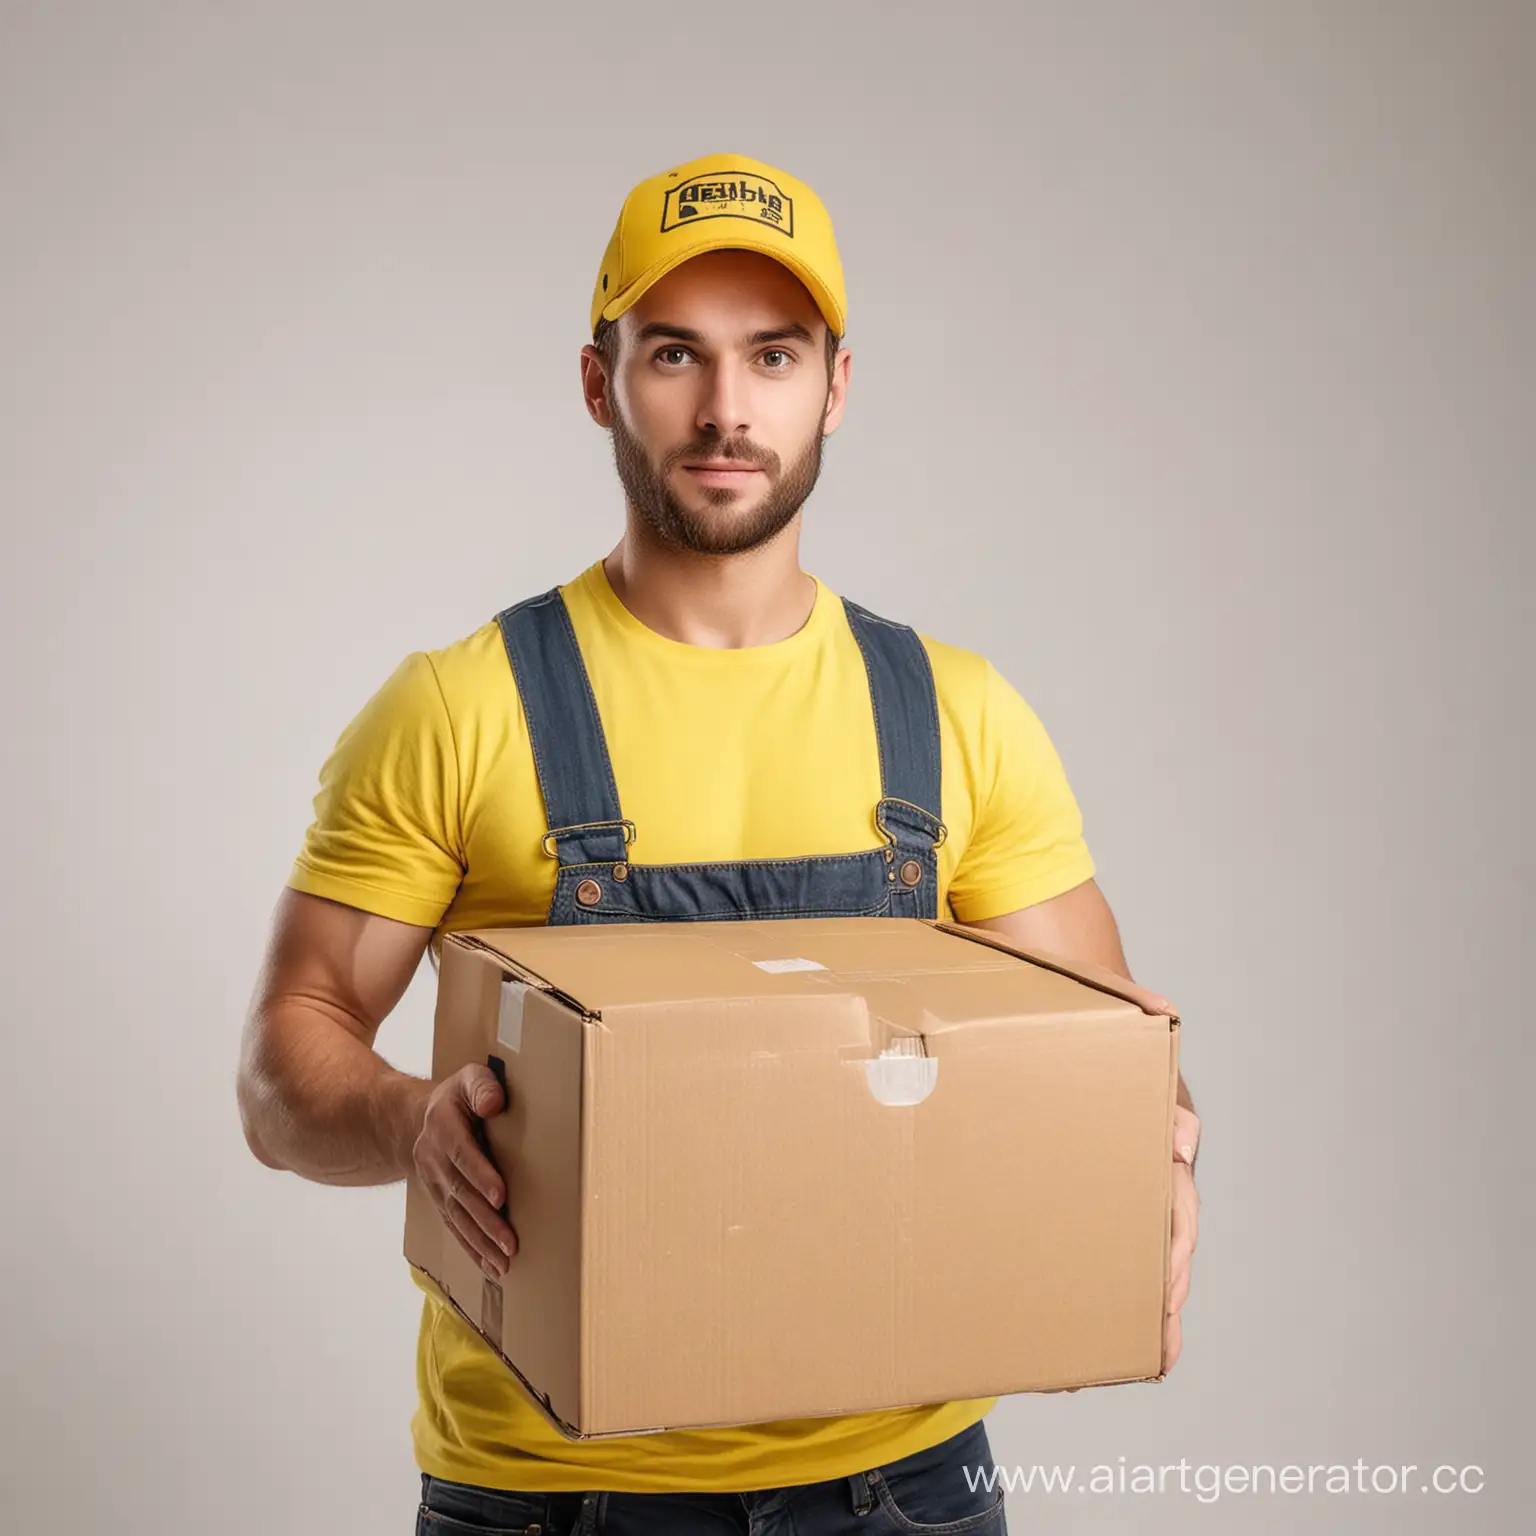 грузчик лет 30 в желтой кепке с коробкой в руках на белом фоне